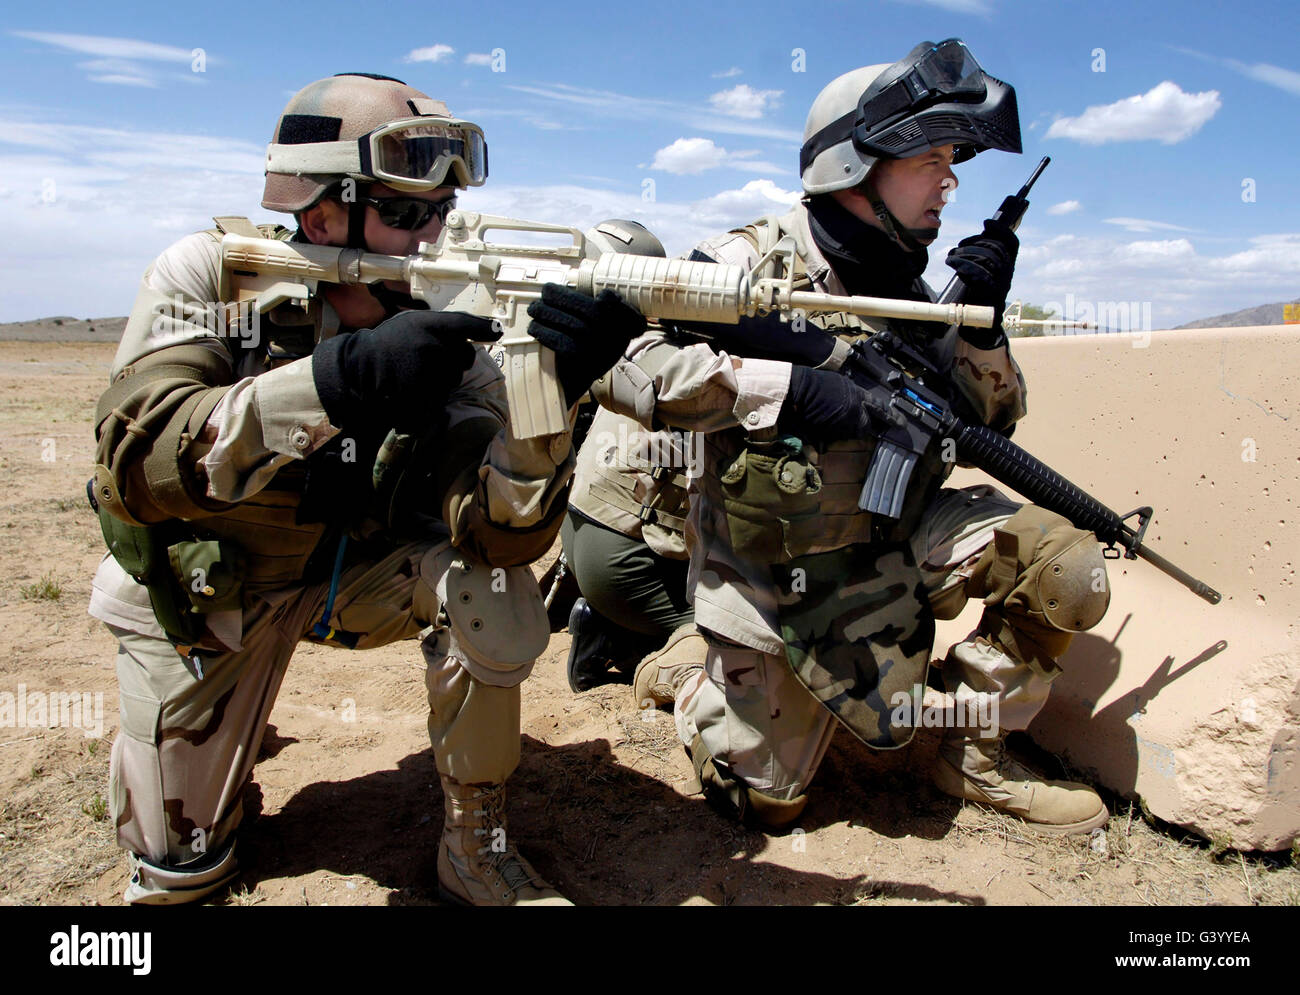 Los soldados responden a una amenaza en un curso de formación en habilidades de combate Foto de stock